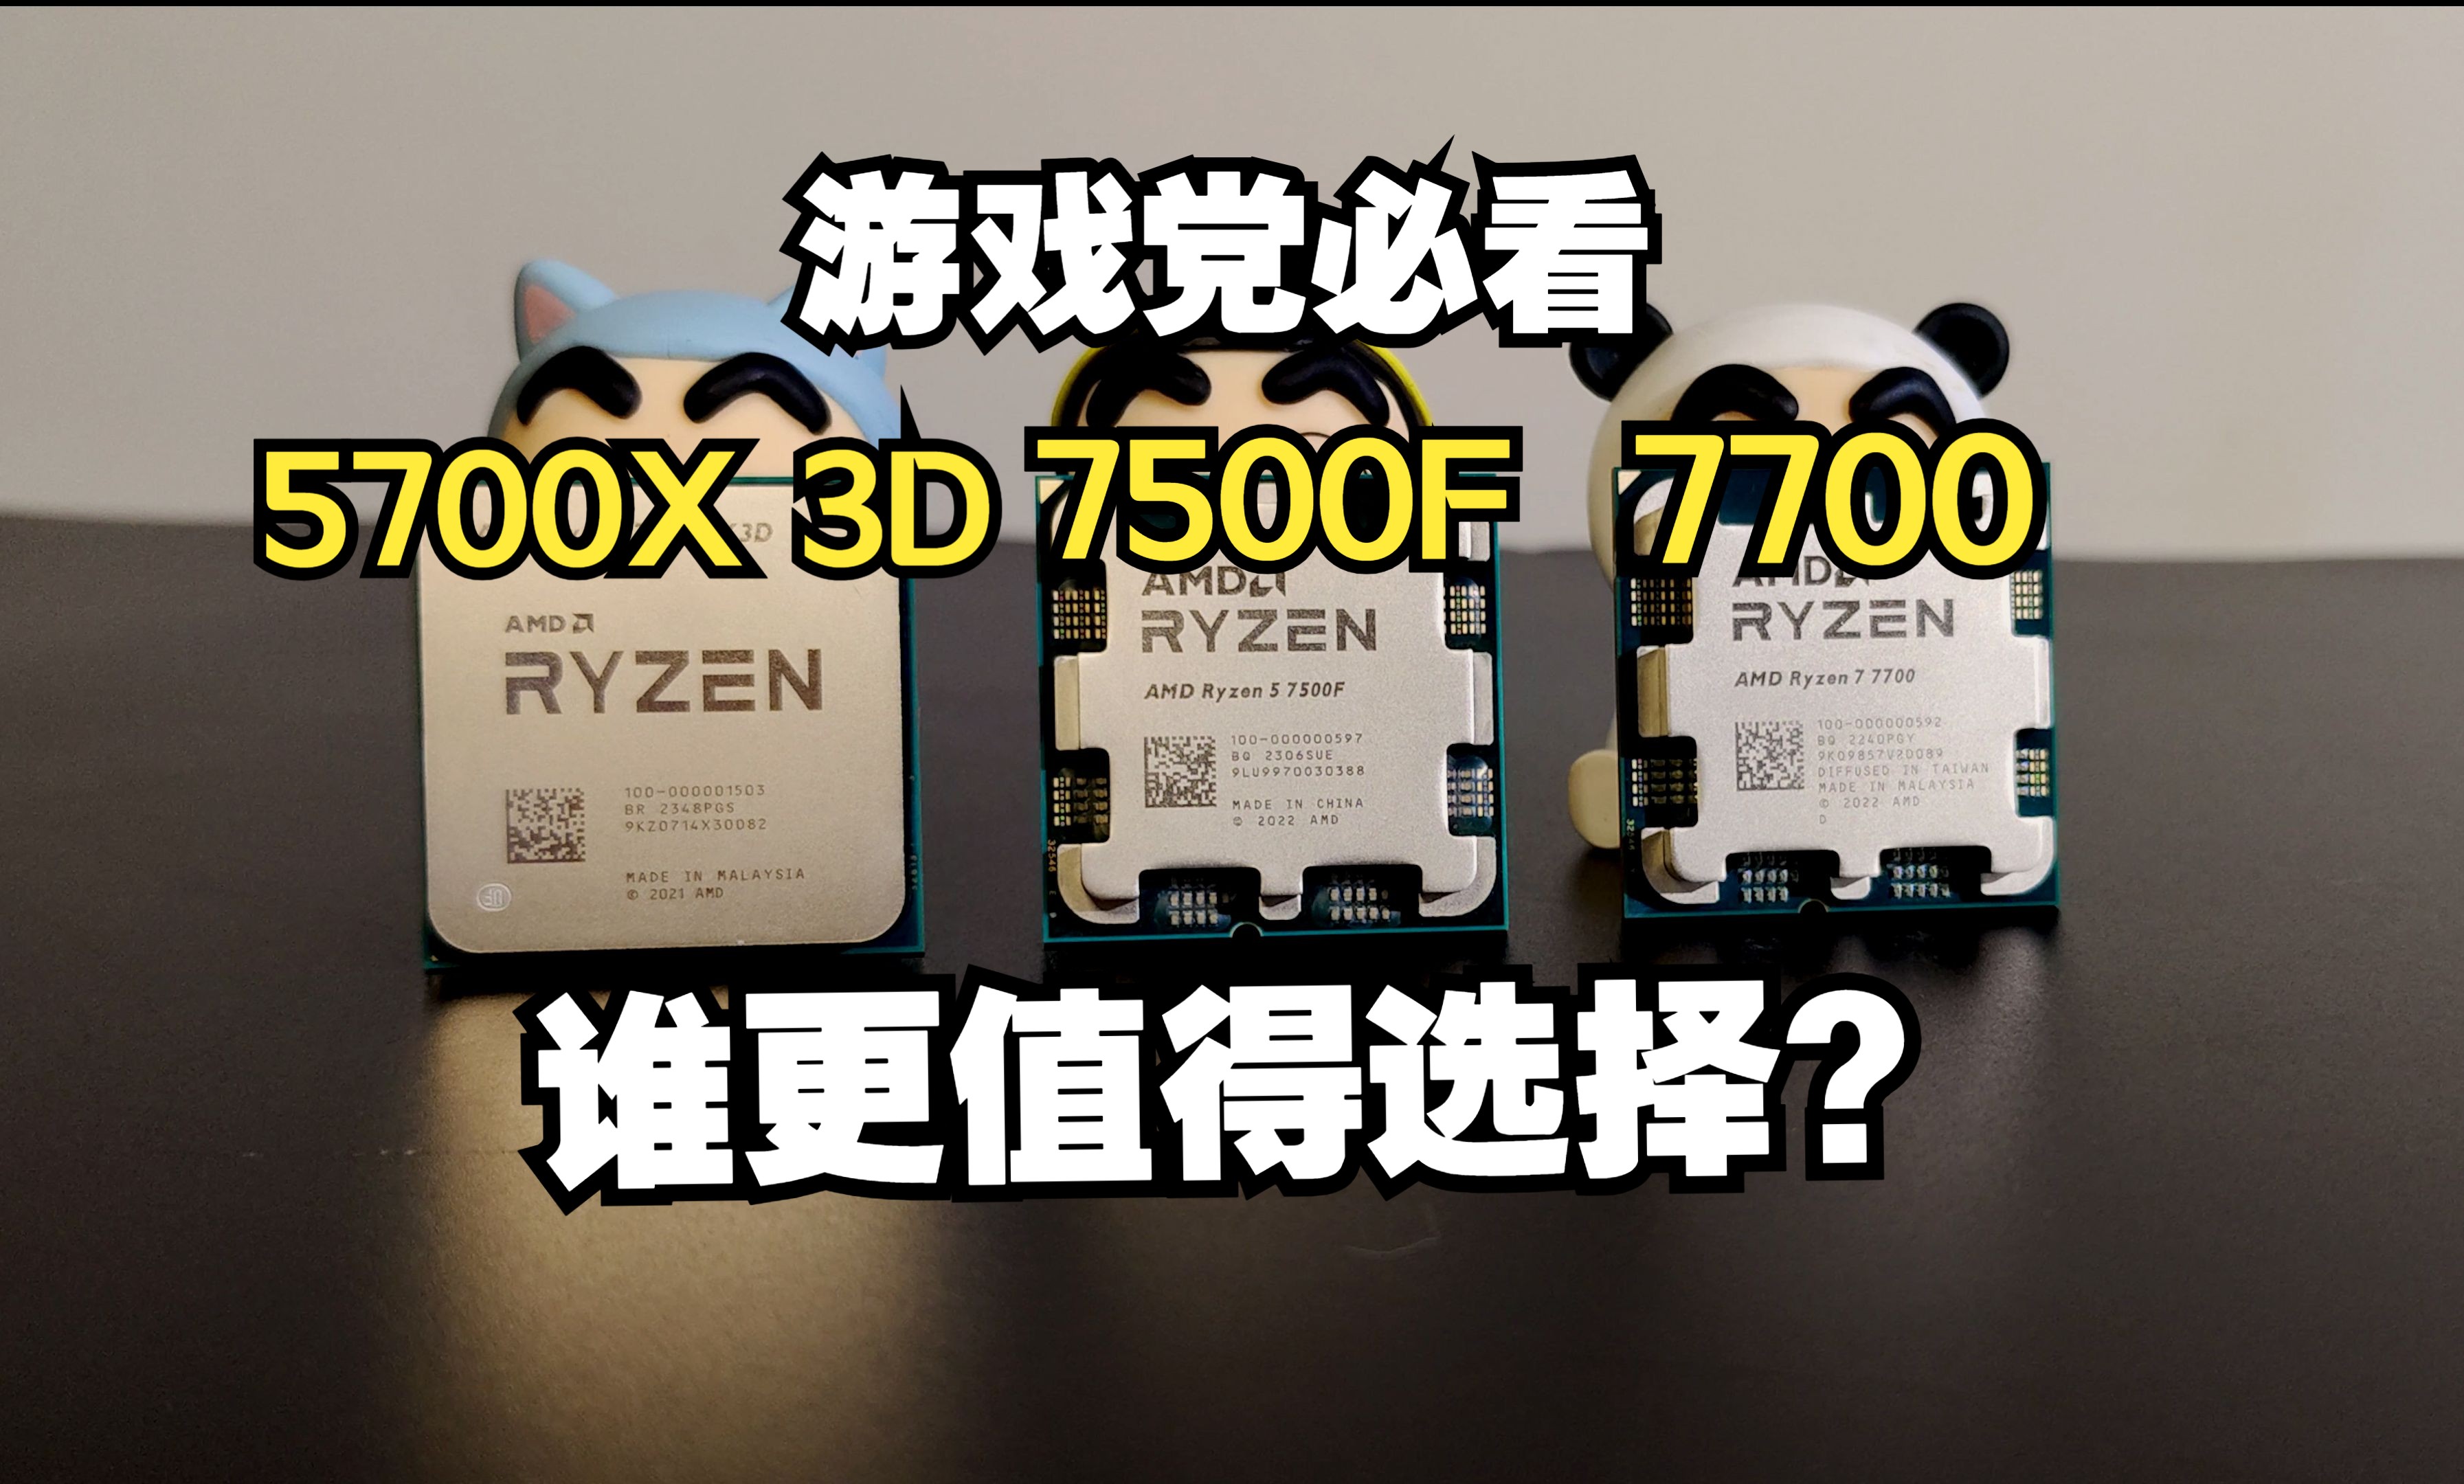 游戏党必看，AMD热门游戏U谁更值得选择？性能差距有多大？详细评测锐龙7500F和7700和5700X3D